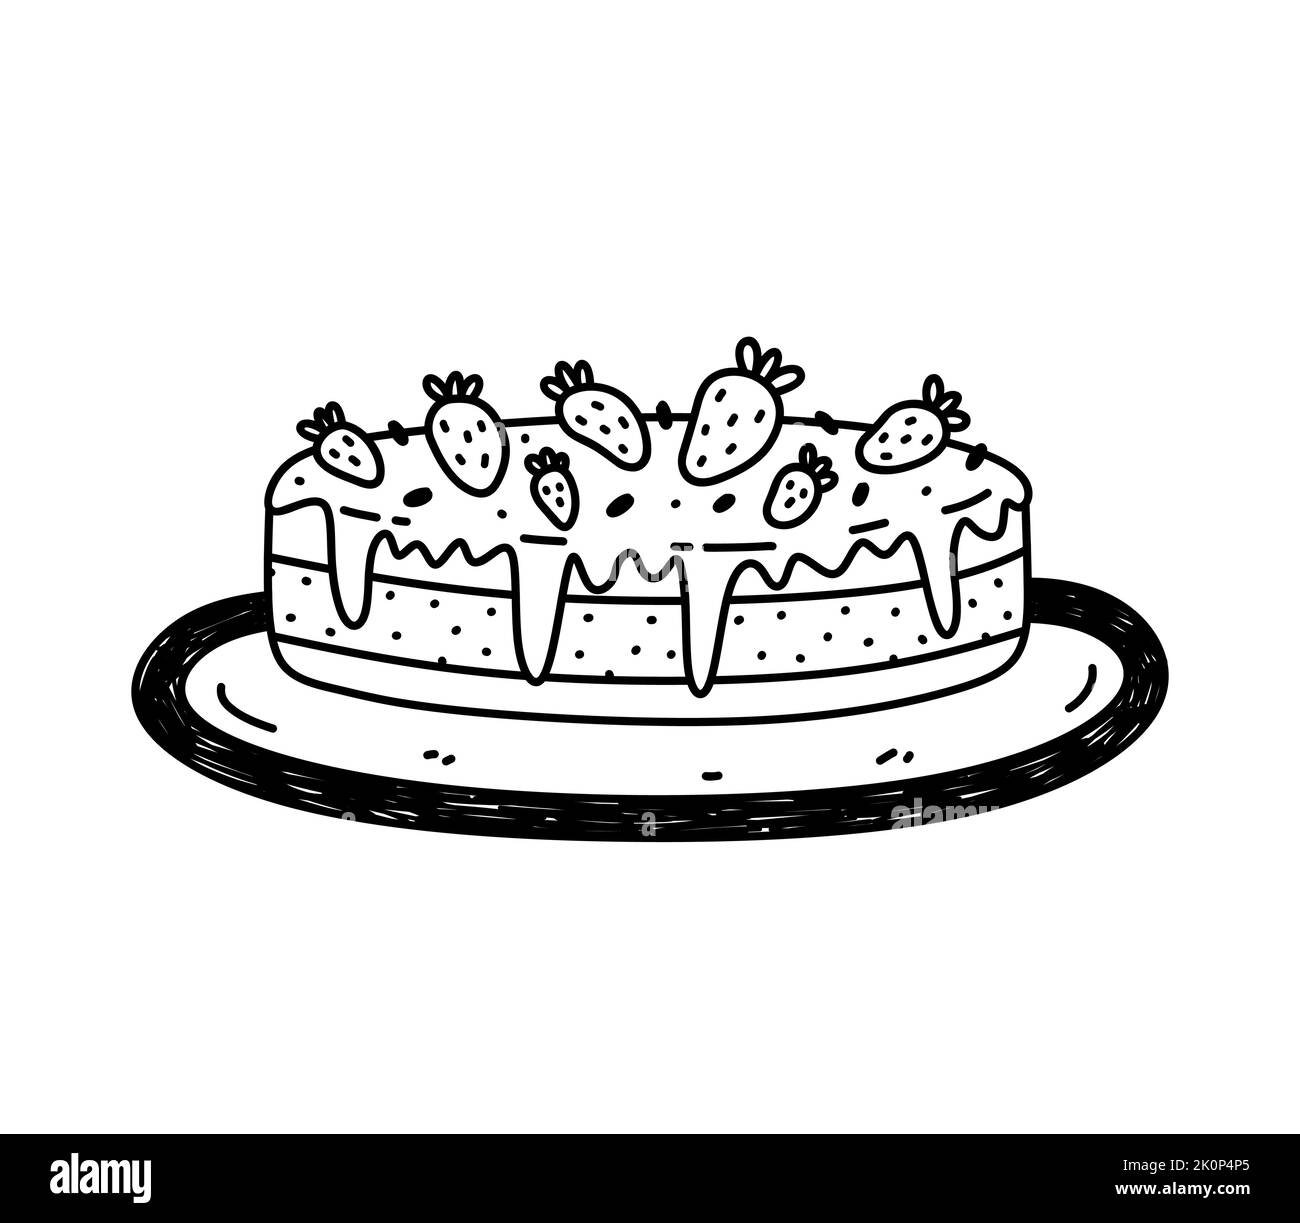 Gâteau mignon avec fraises sur une assiette isolée sur fond blanc. Mets sucrés. Illustration vectorielle dessinée à la main, style doodle. Parfait pour différents motifs, cartes, décorations, logo, menu. Illustration de Vecteur